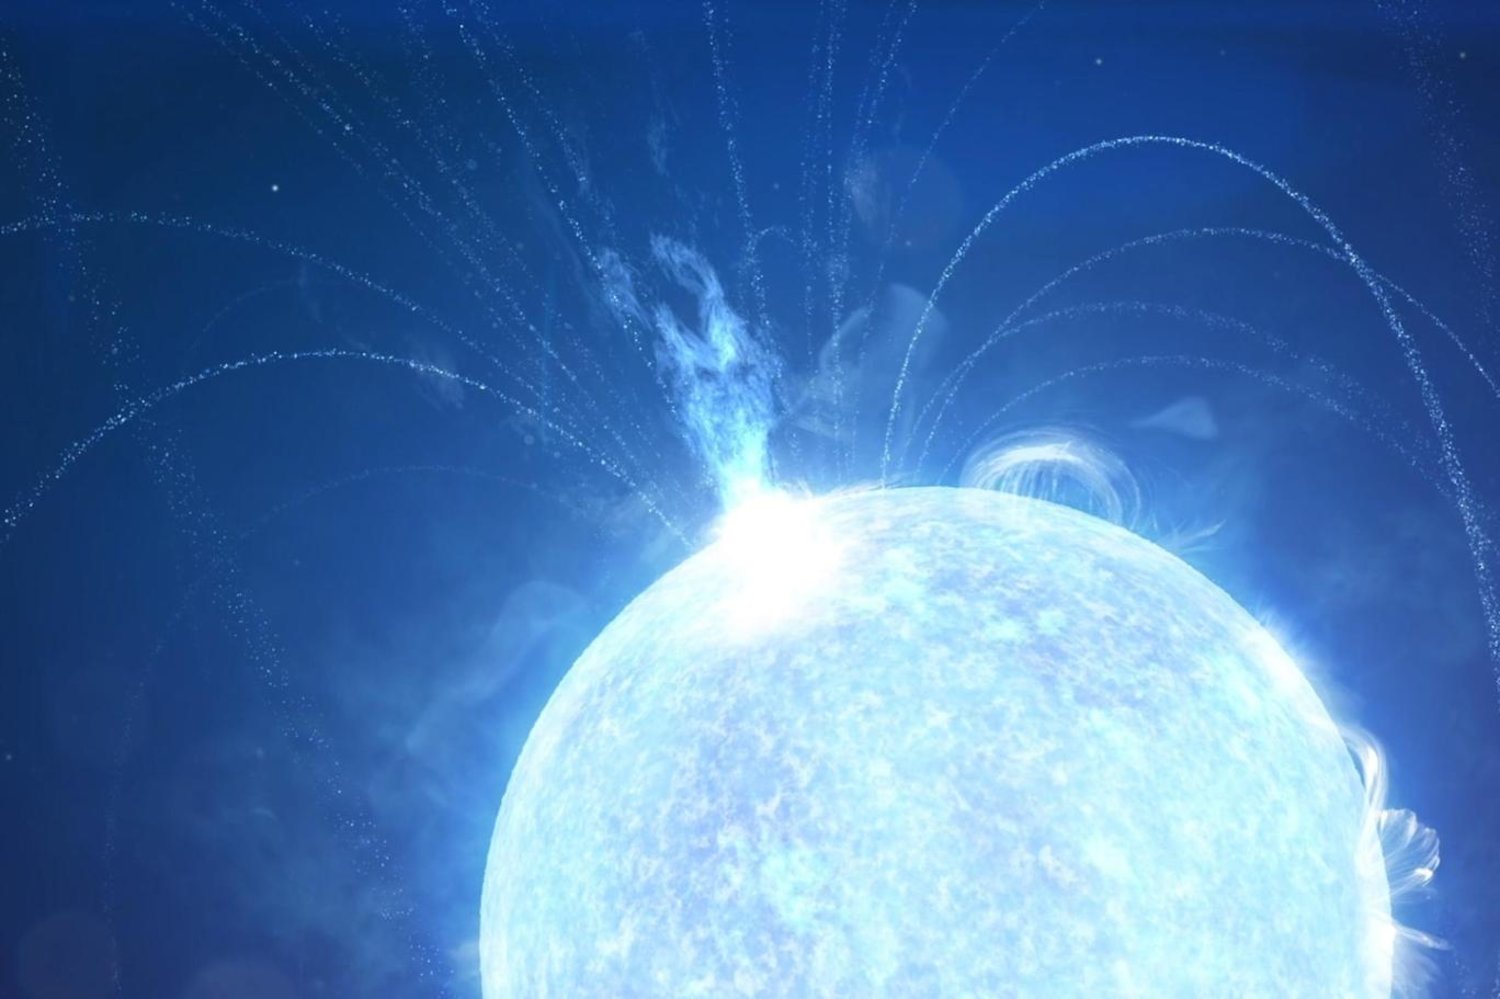 Magnetarlar, nötron yıldızına dönüşebileceği kadar kütleye sahip bir yıldızın içine doğru çöküp patlamasıyla oluşuyor (NASA Goddard Uzay Uçuş Merkezi)